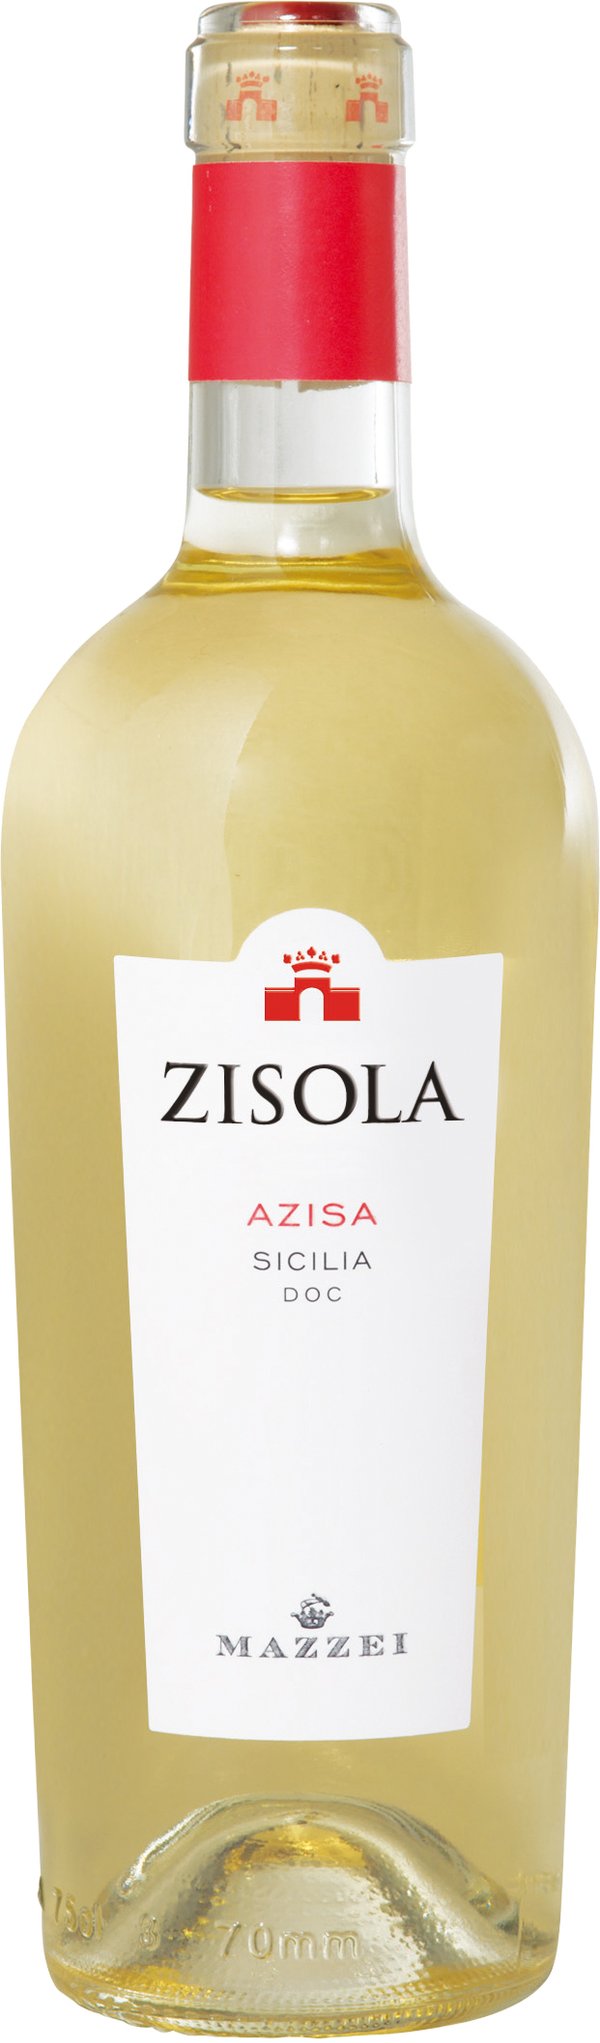 Grillo "Azisa" DOC 2021 Zisola Mazzei